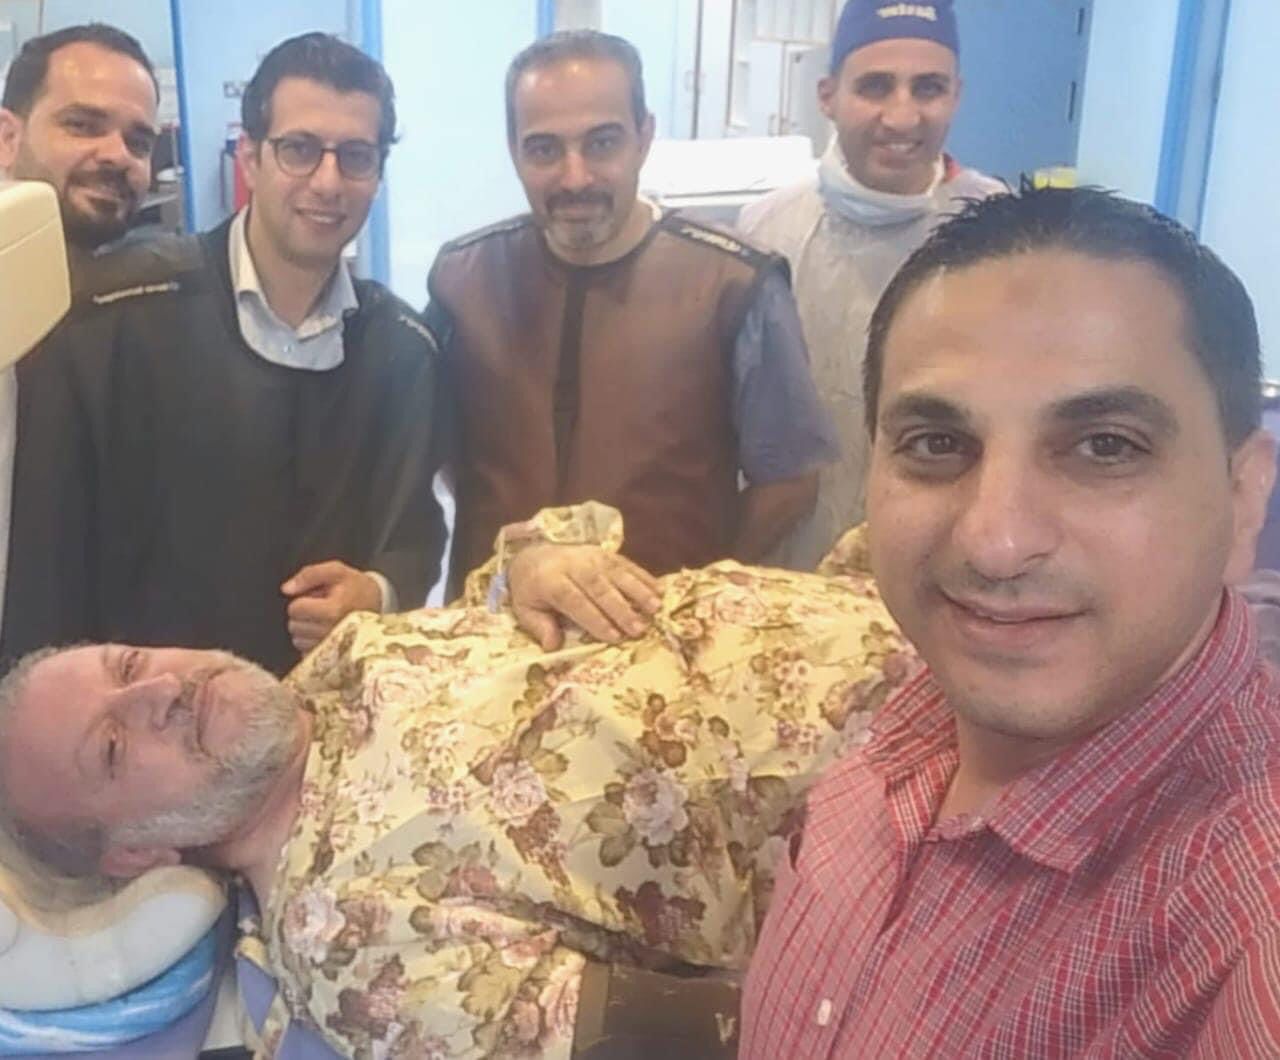 إجراء عملية قسطرة لشرايين الدماغ لرئيس بلدية إربد نبيل الكوفحي 